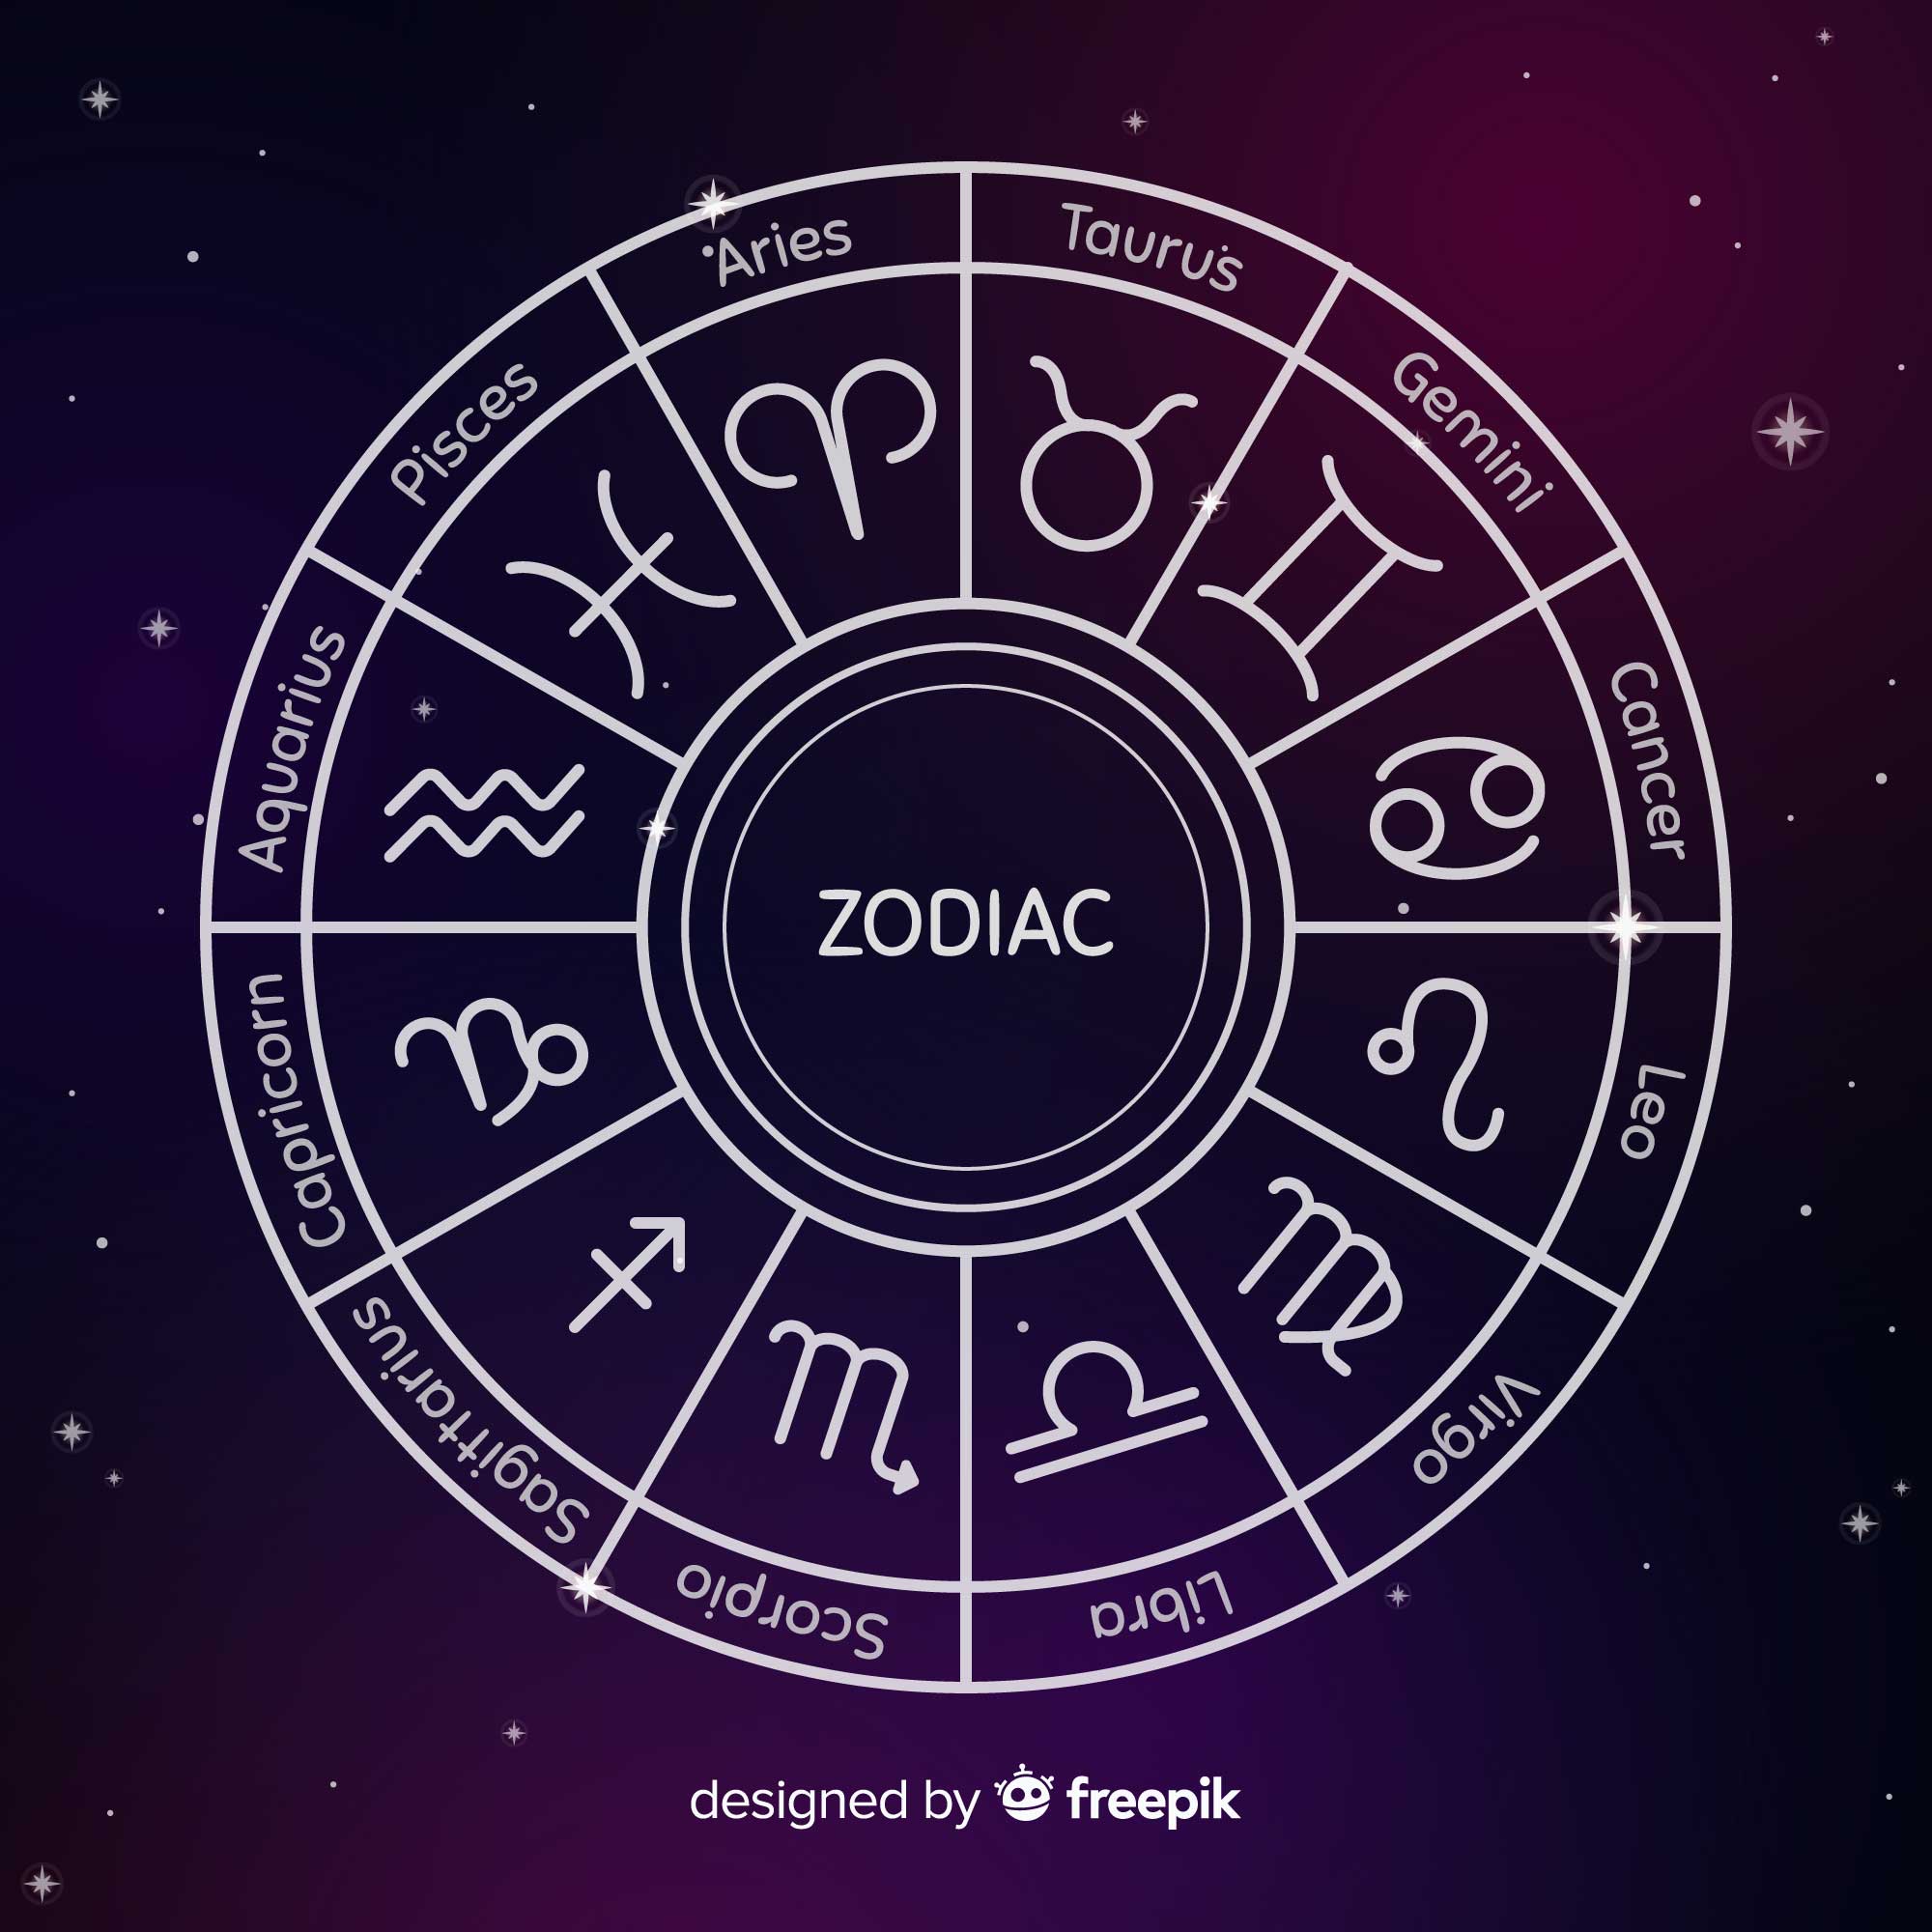 Astrologie - die Sternzeichen